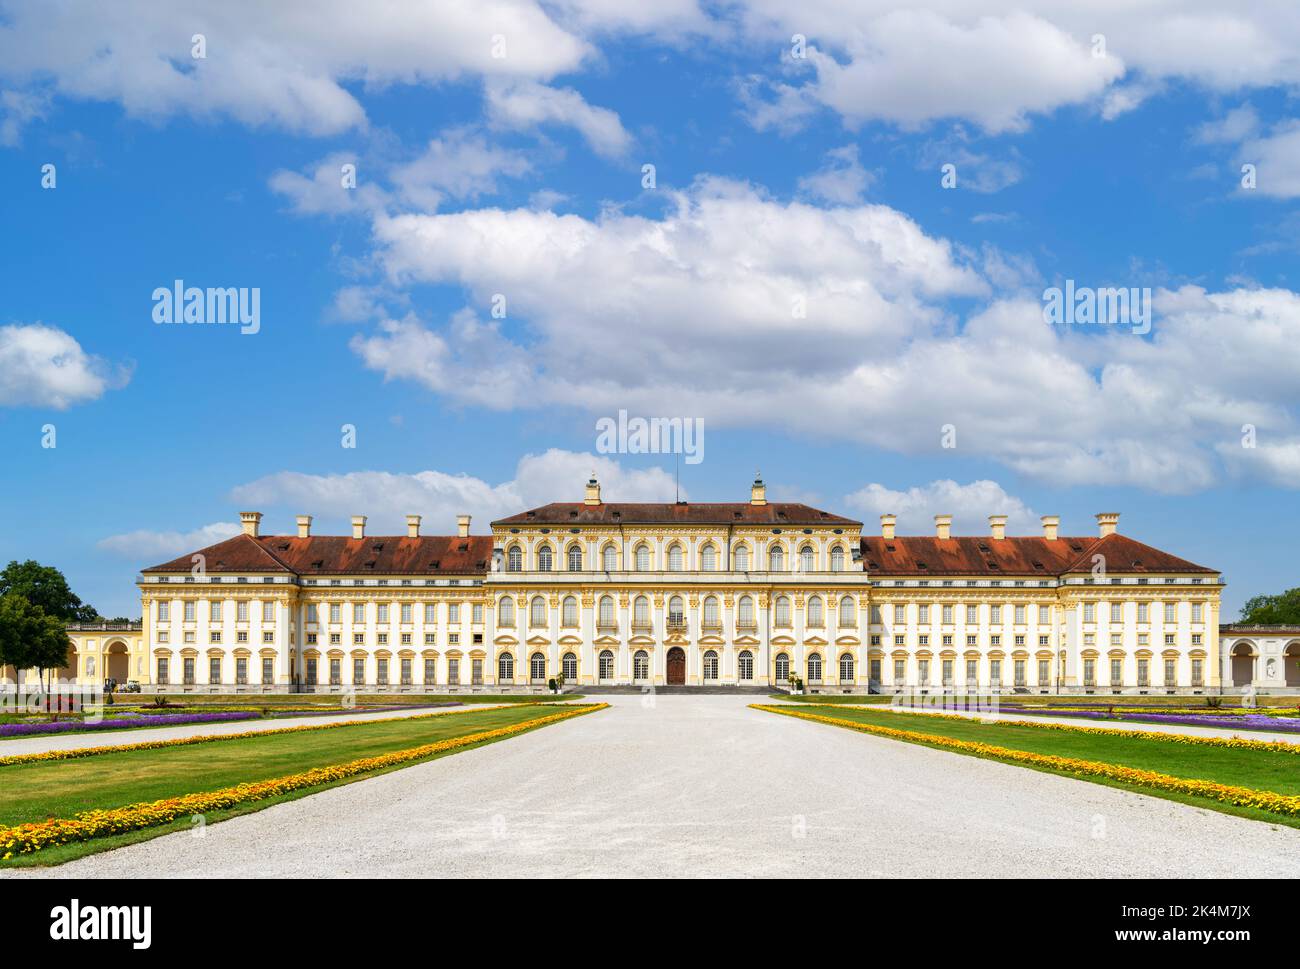 Neues Schloss Schleißheim, complexe du palais de Schleissheim, Munich, Bavière, Allemagne Banque D'Images